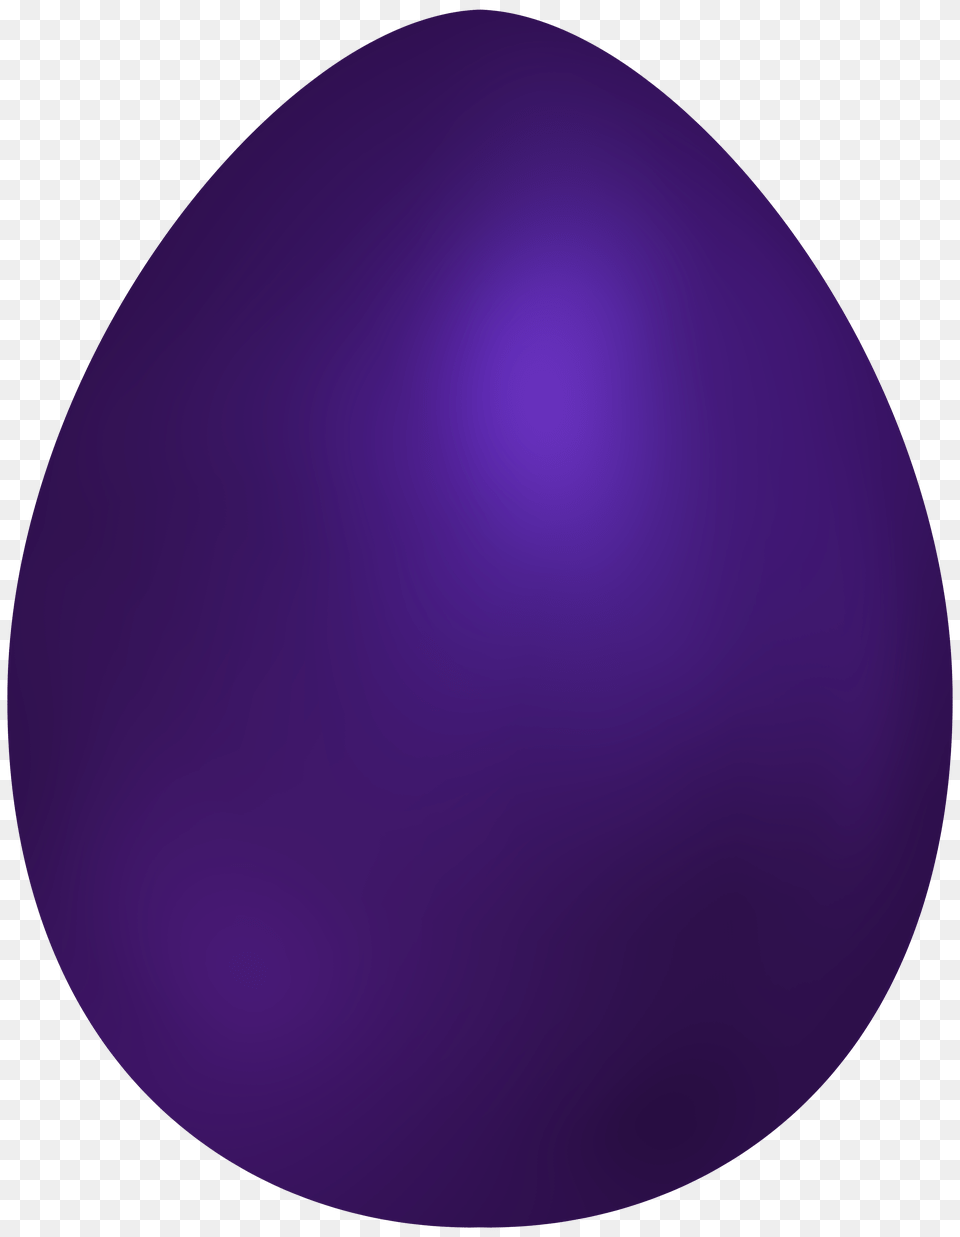 Dark Purple Easter Egg Clip Art, Food, Easter Egg Free Transparent Png